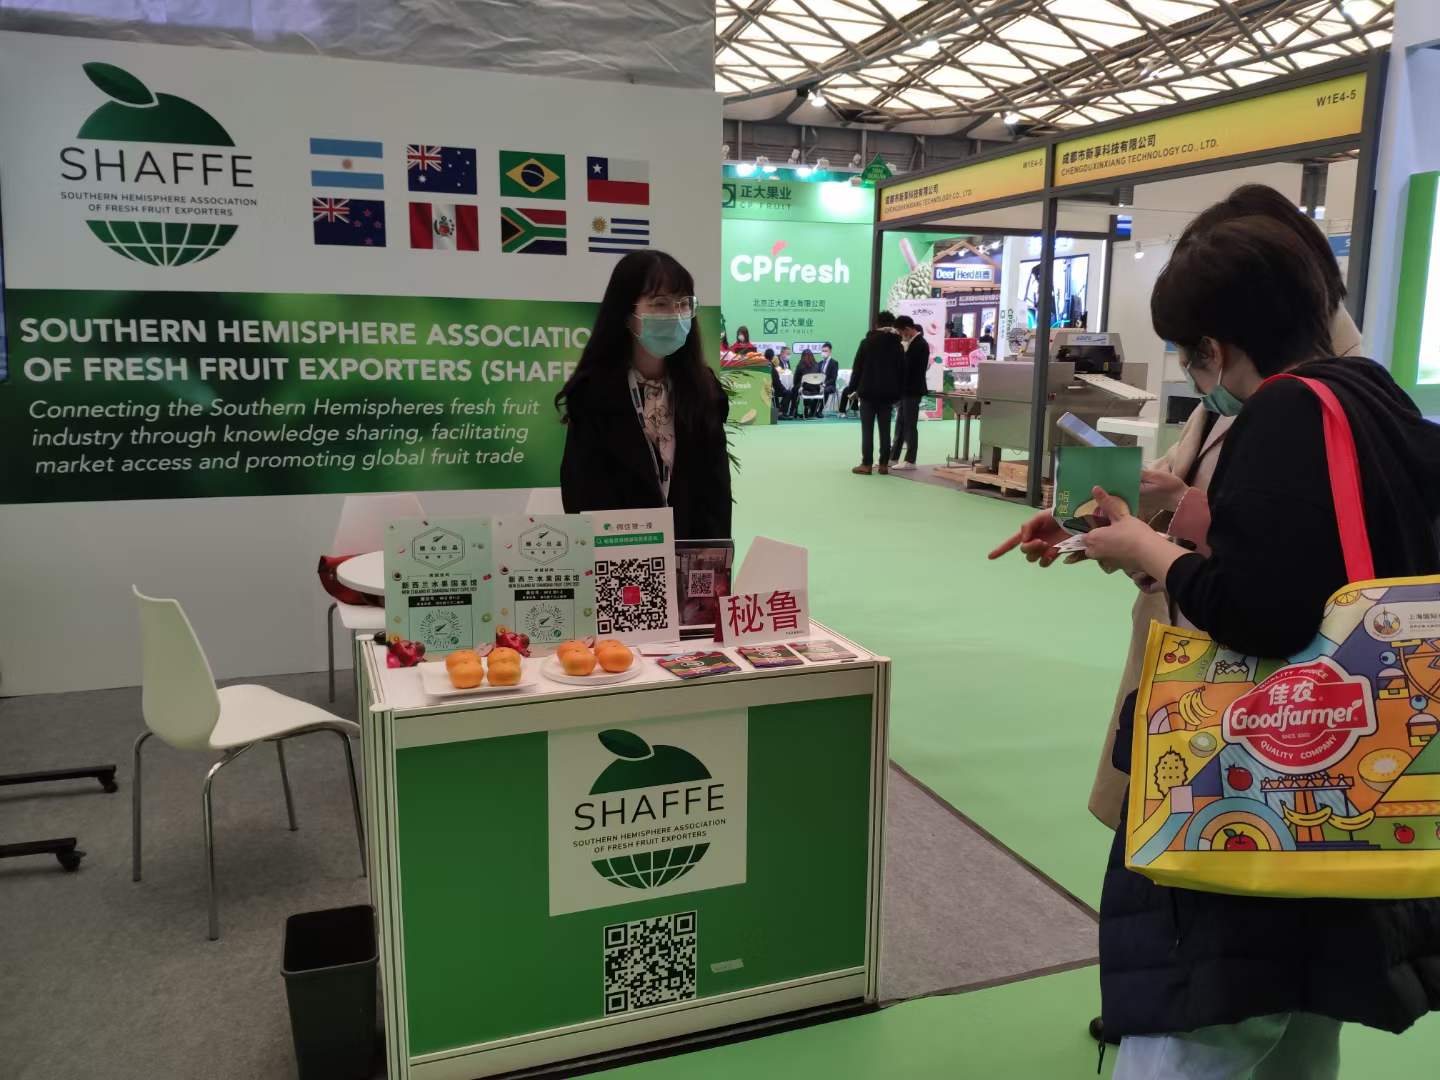 SHAFFE participa en Shanghai International Fruit Expo Shanghai para consolidar lazos de amistad y el posicionamiento de los exportadores de frutas del hemisferio sur